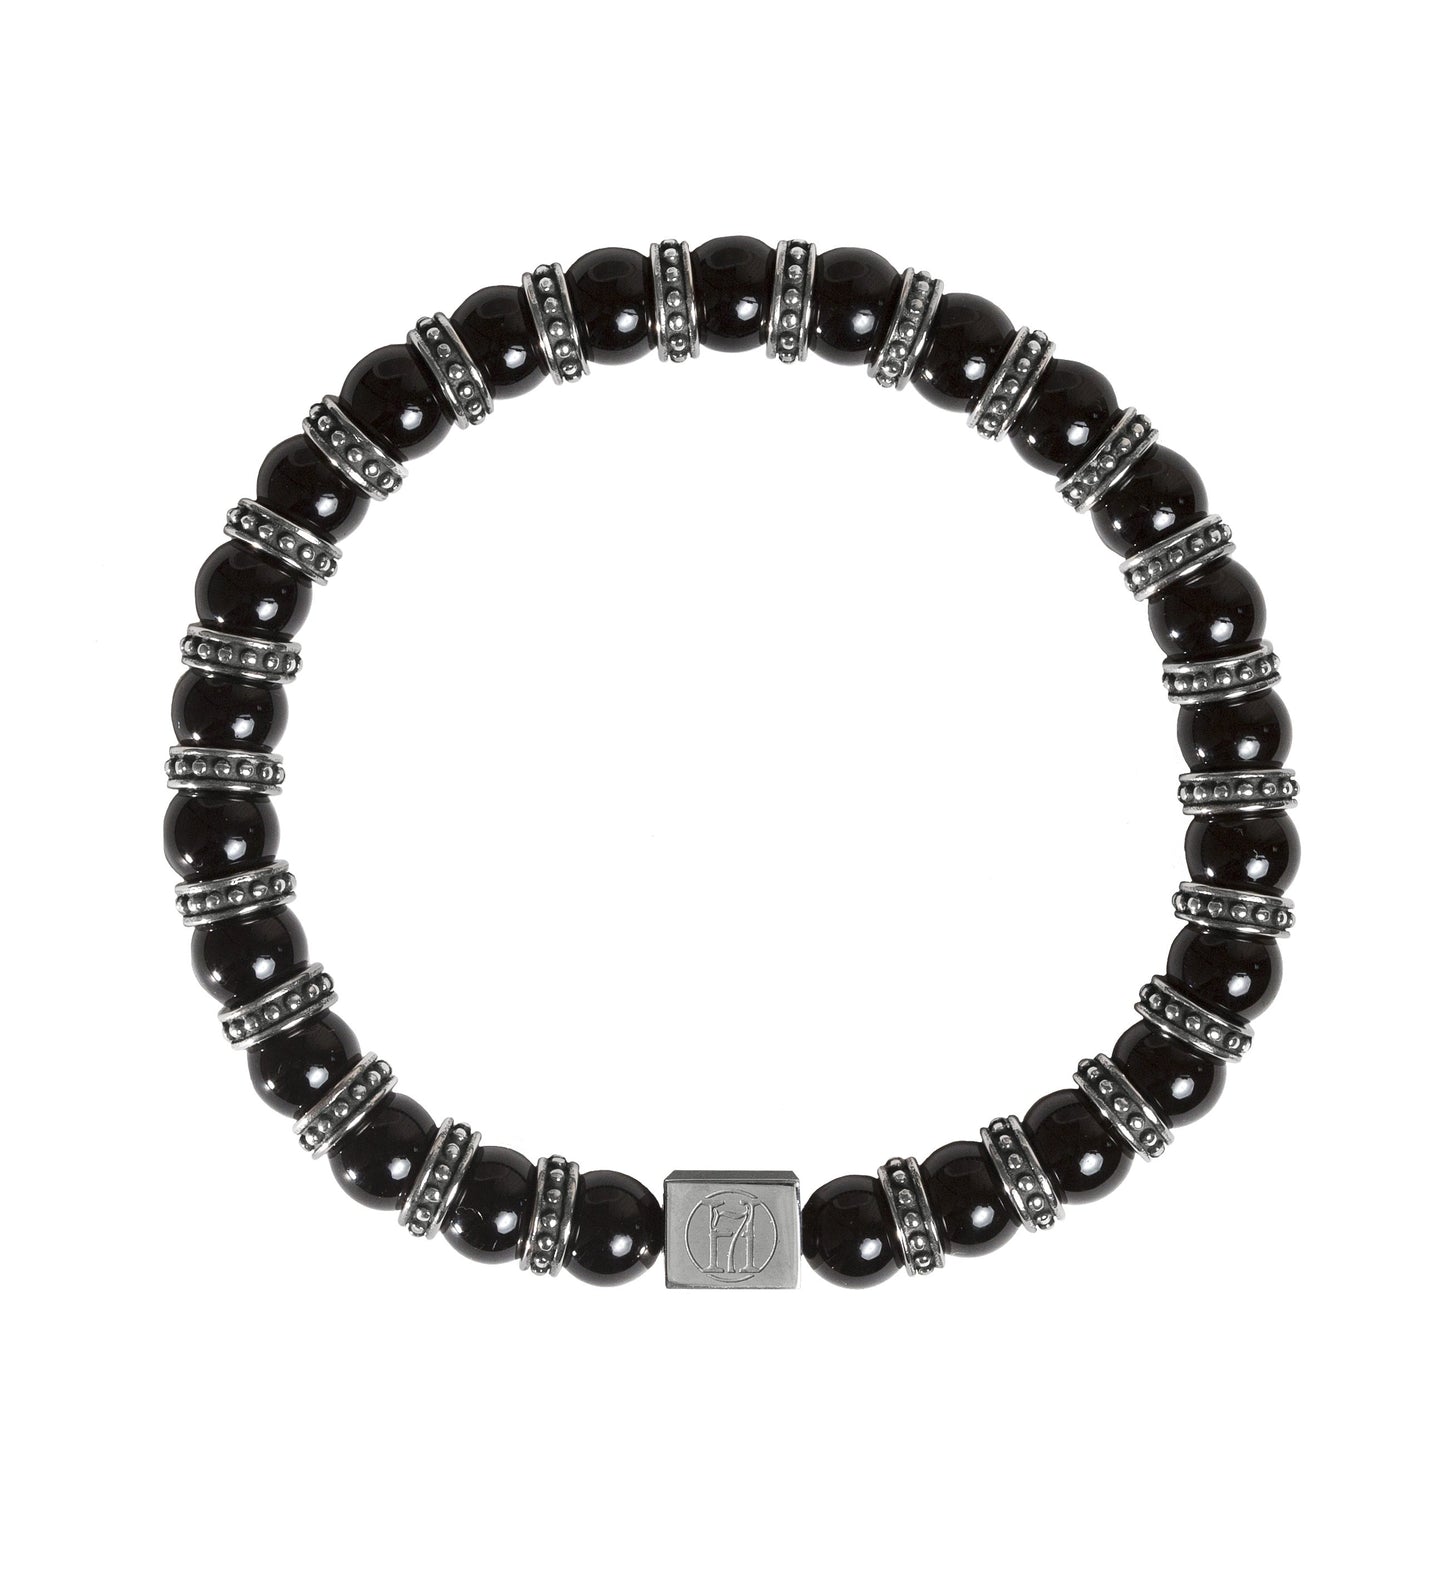 Men's Black Onyx Bracelet Bracelet for Strength, Power & Protection